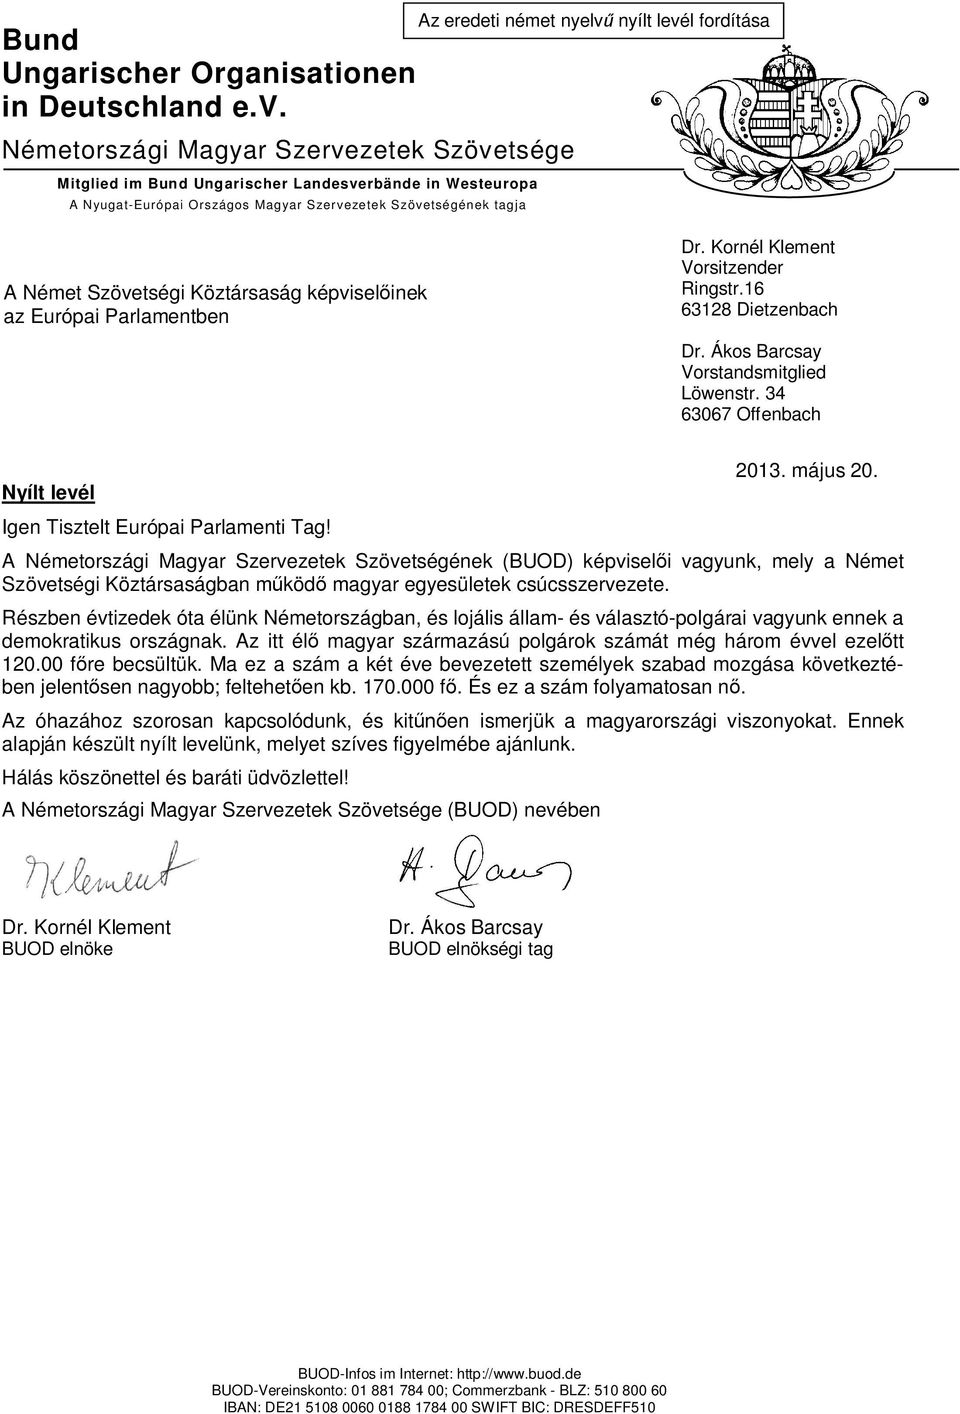 levél fordítása A Német Szövetségi Köztársaság képvisel inek az Európai Parlamentben Dr. Kornél Klement Vorsitzender Ringstr.16 63128 Dietzenbach Dr. Ákos Barcsay Vorstandsmitglied Löwenstr.